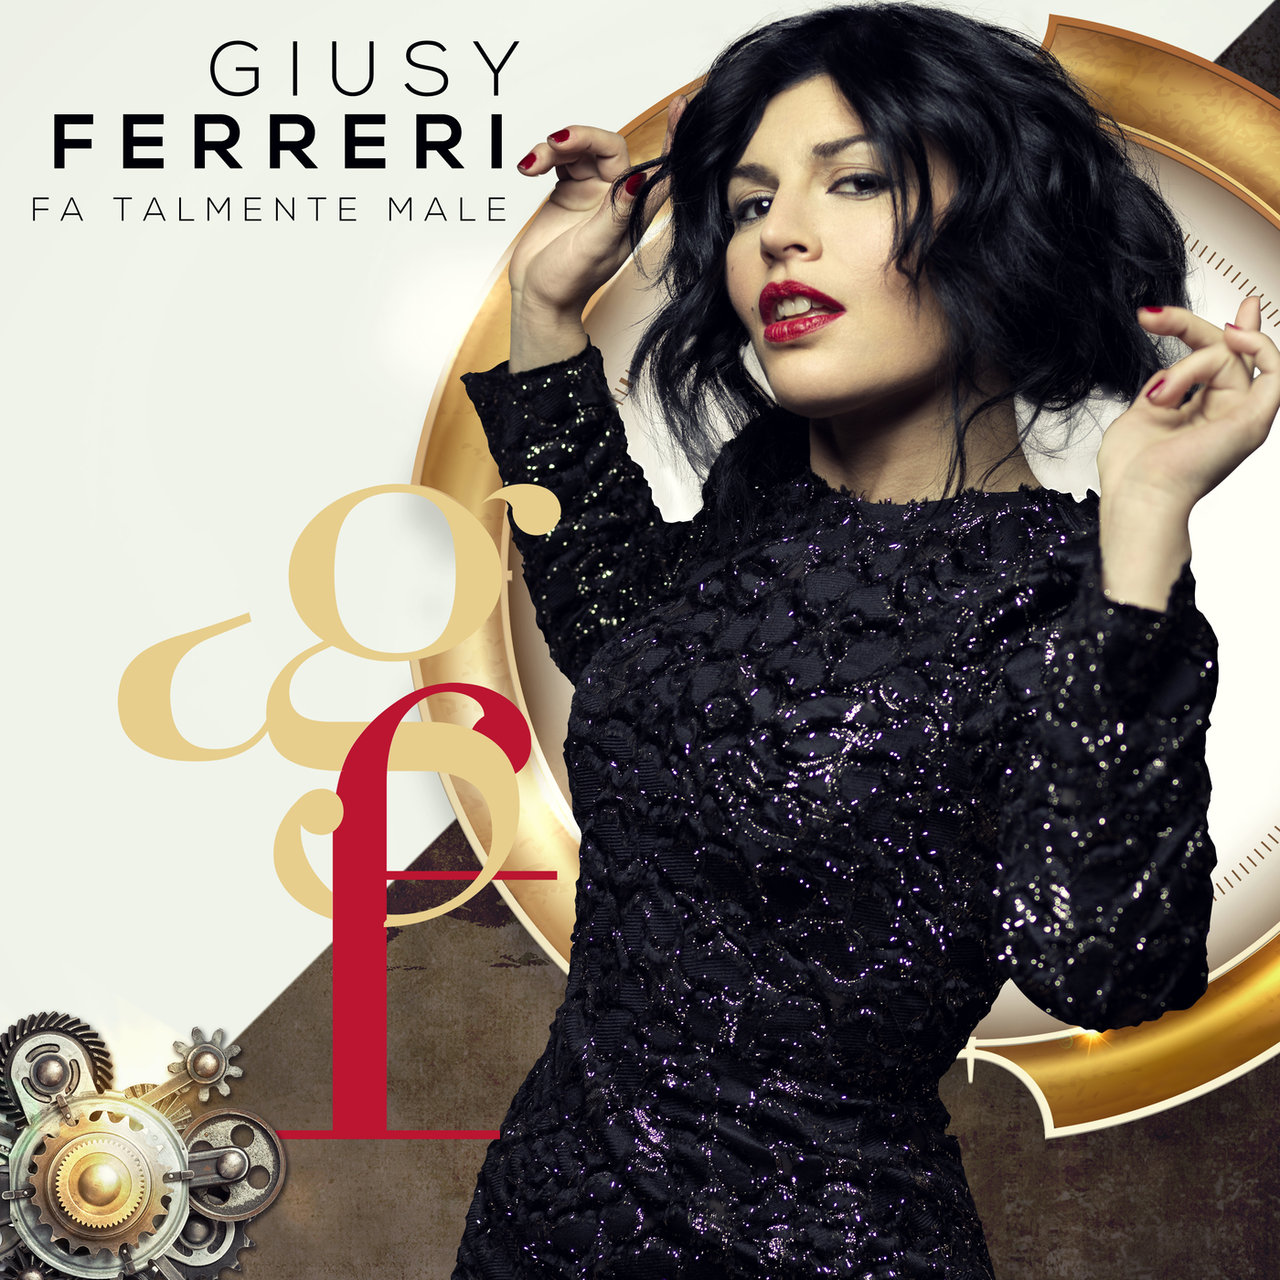 Giusy Ferreri — Fa talmente male cover artwork